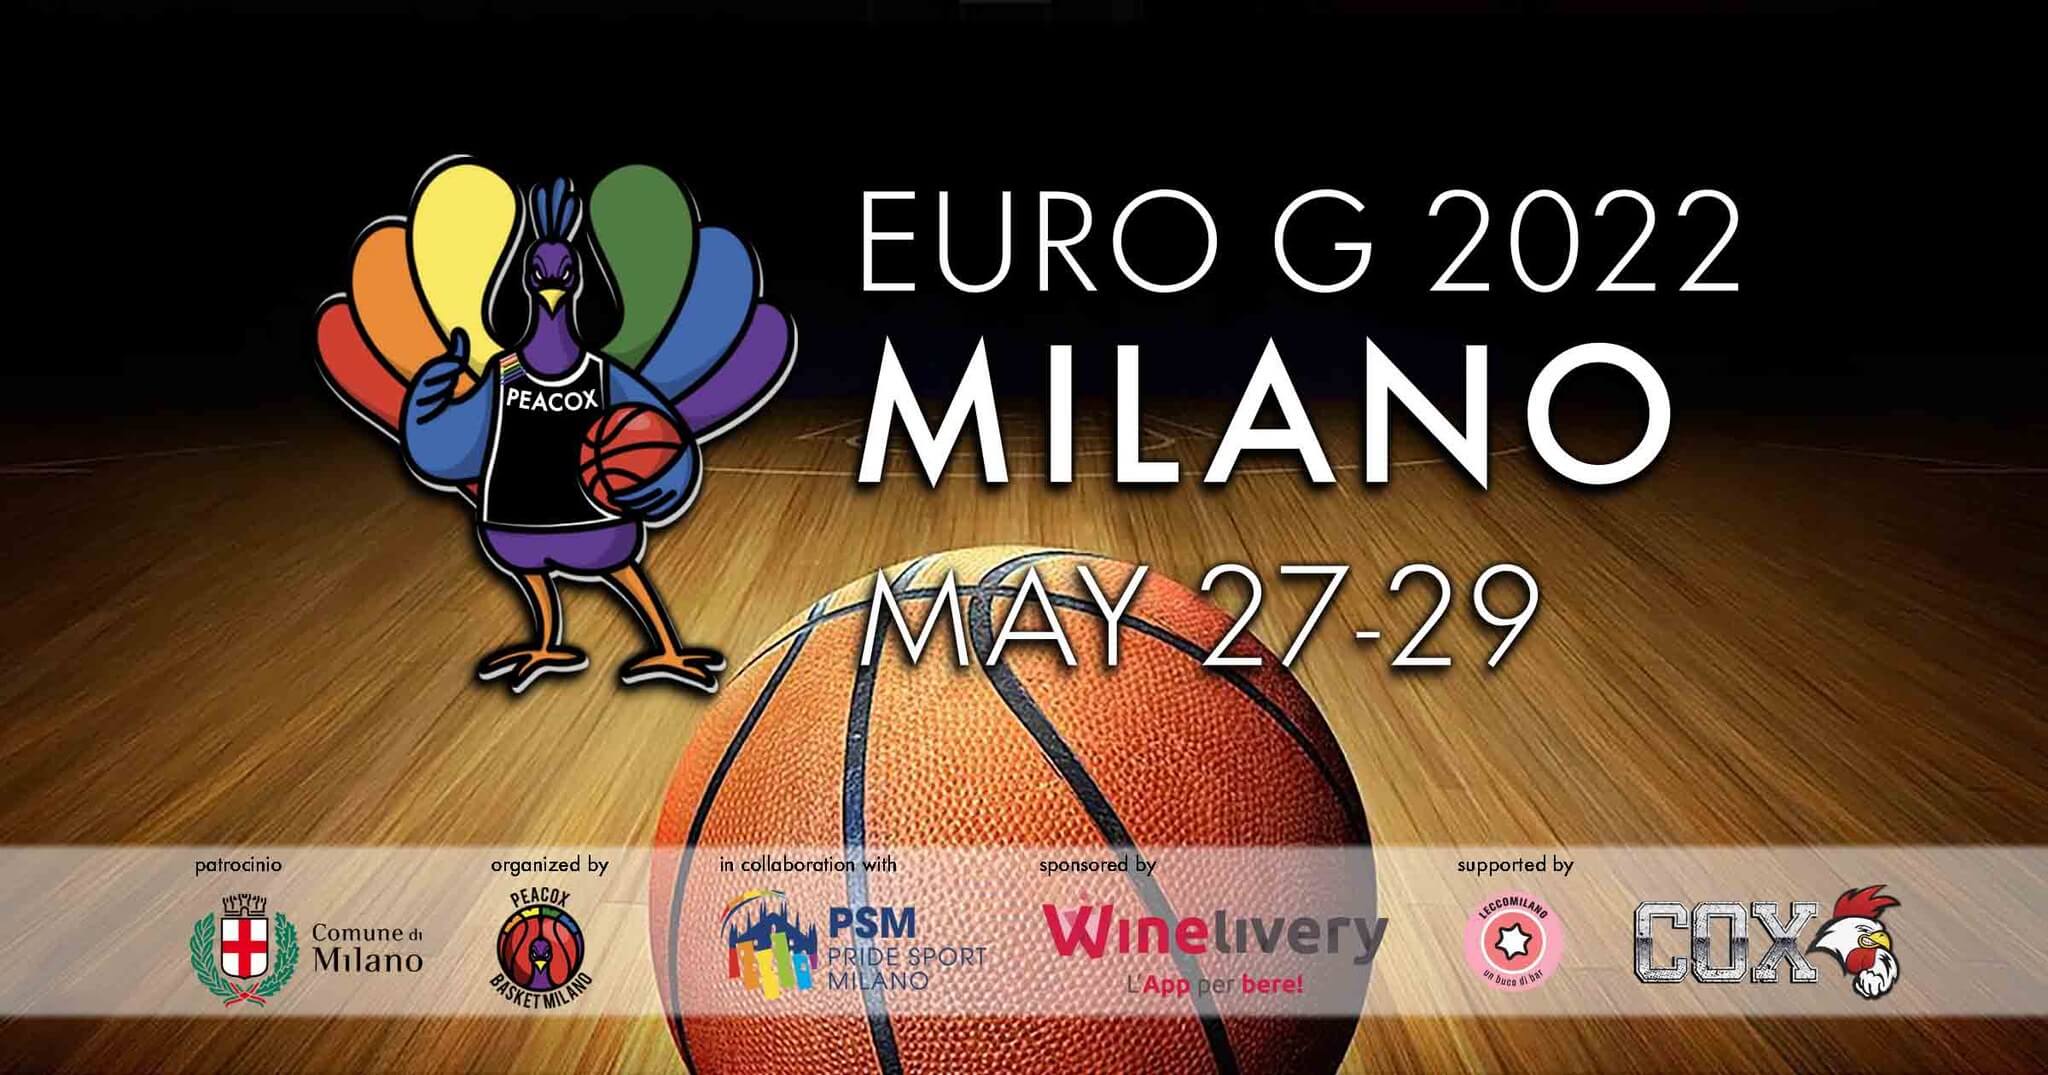 Euro G Milano 2022, a Milano il torneo internazionale LGBTQ di basket - Euro G Milano 2022 - Gay.it